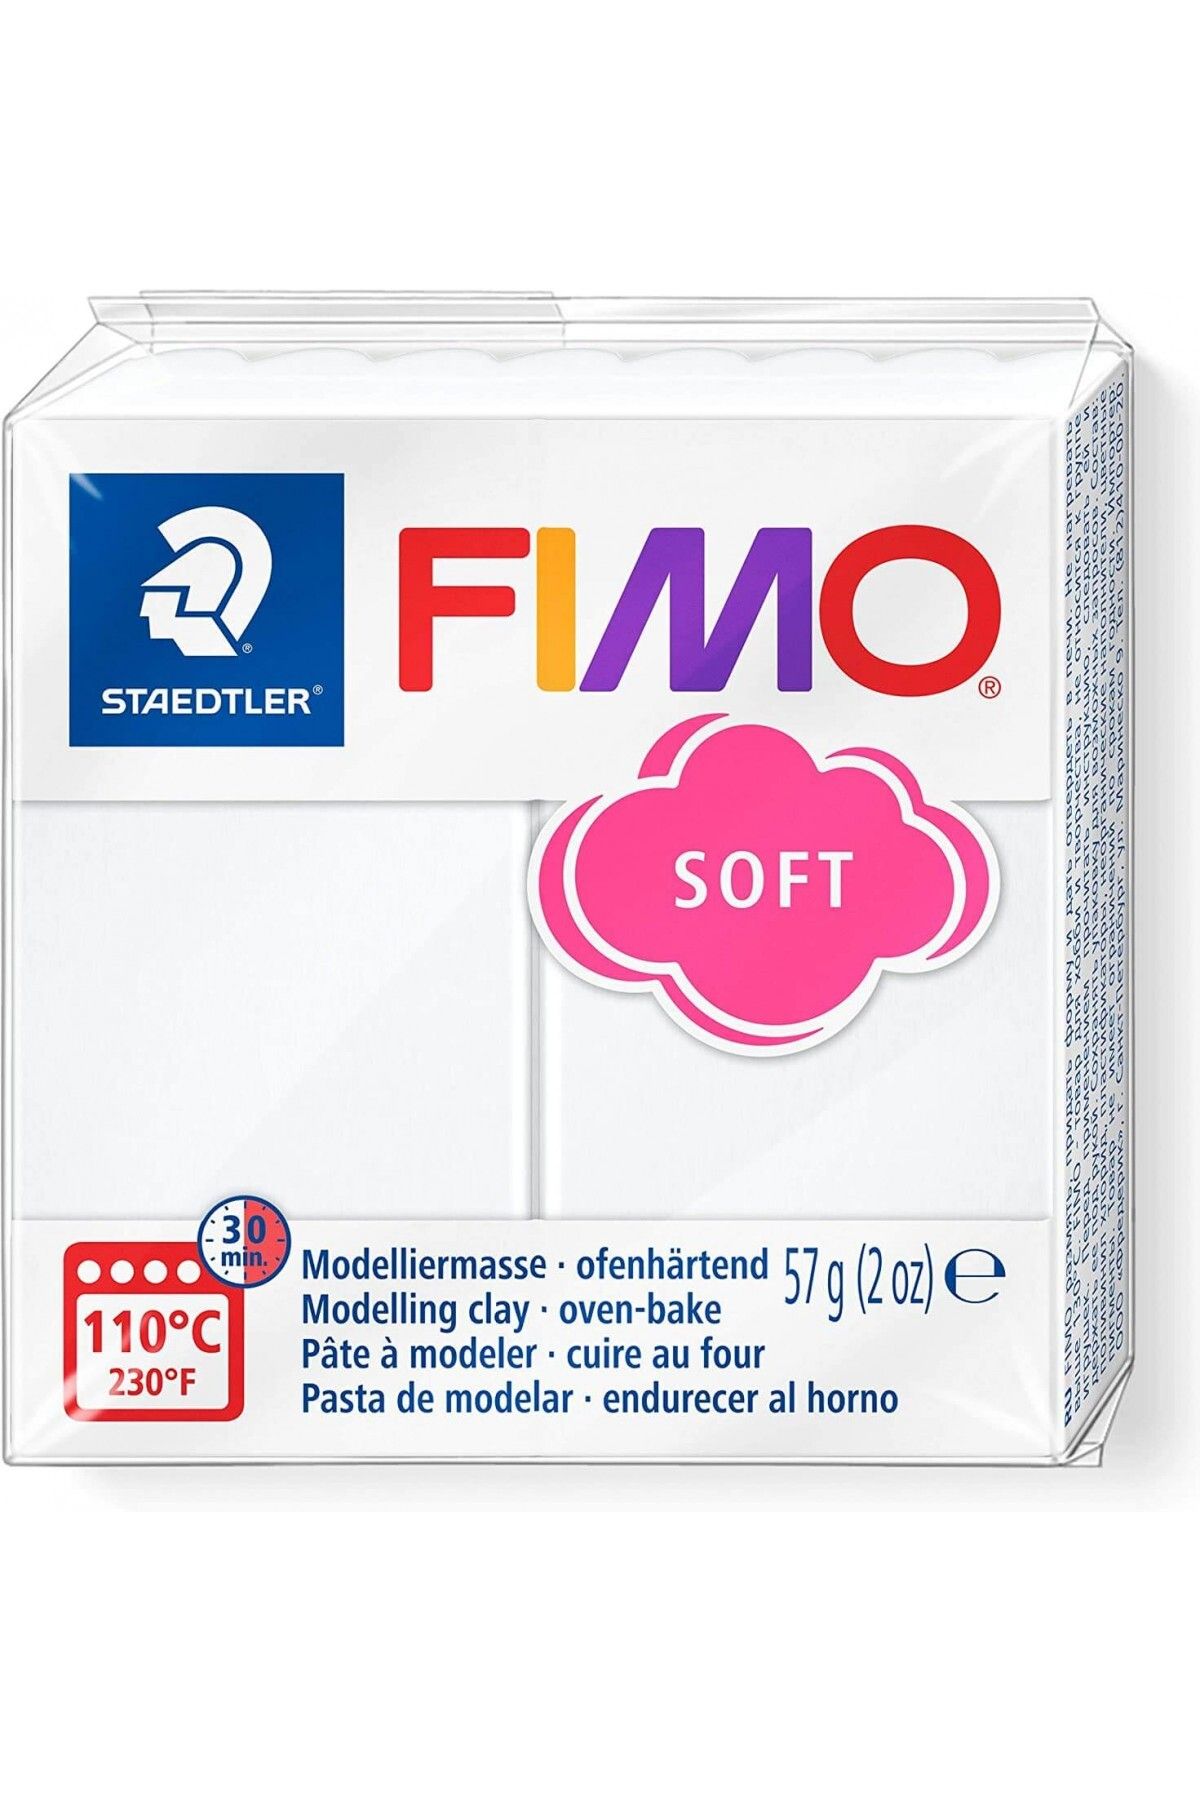 Staedtler Fimo Polimer Kil 57gr Soft Modelleme Kili Beyaz / 8020-0 07